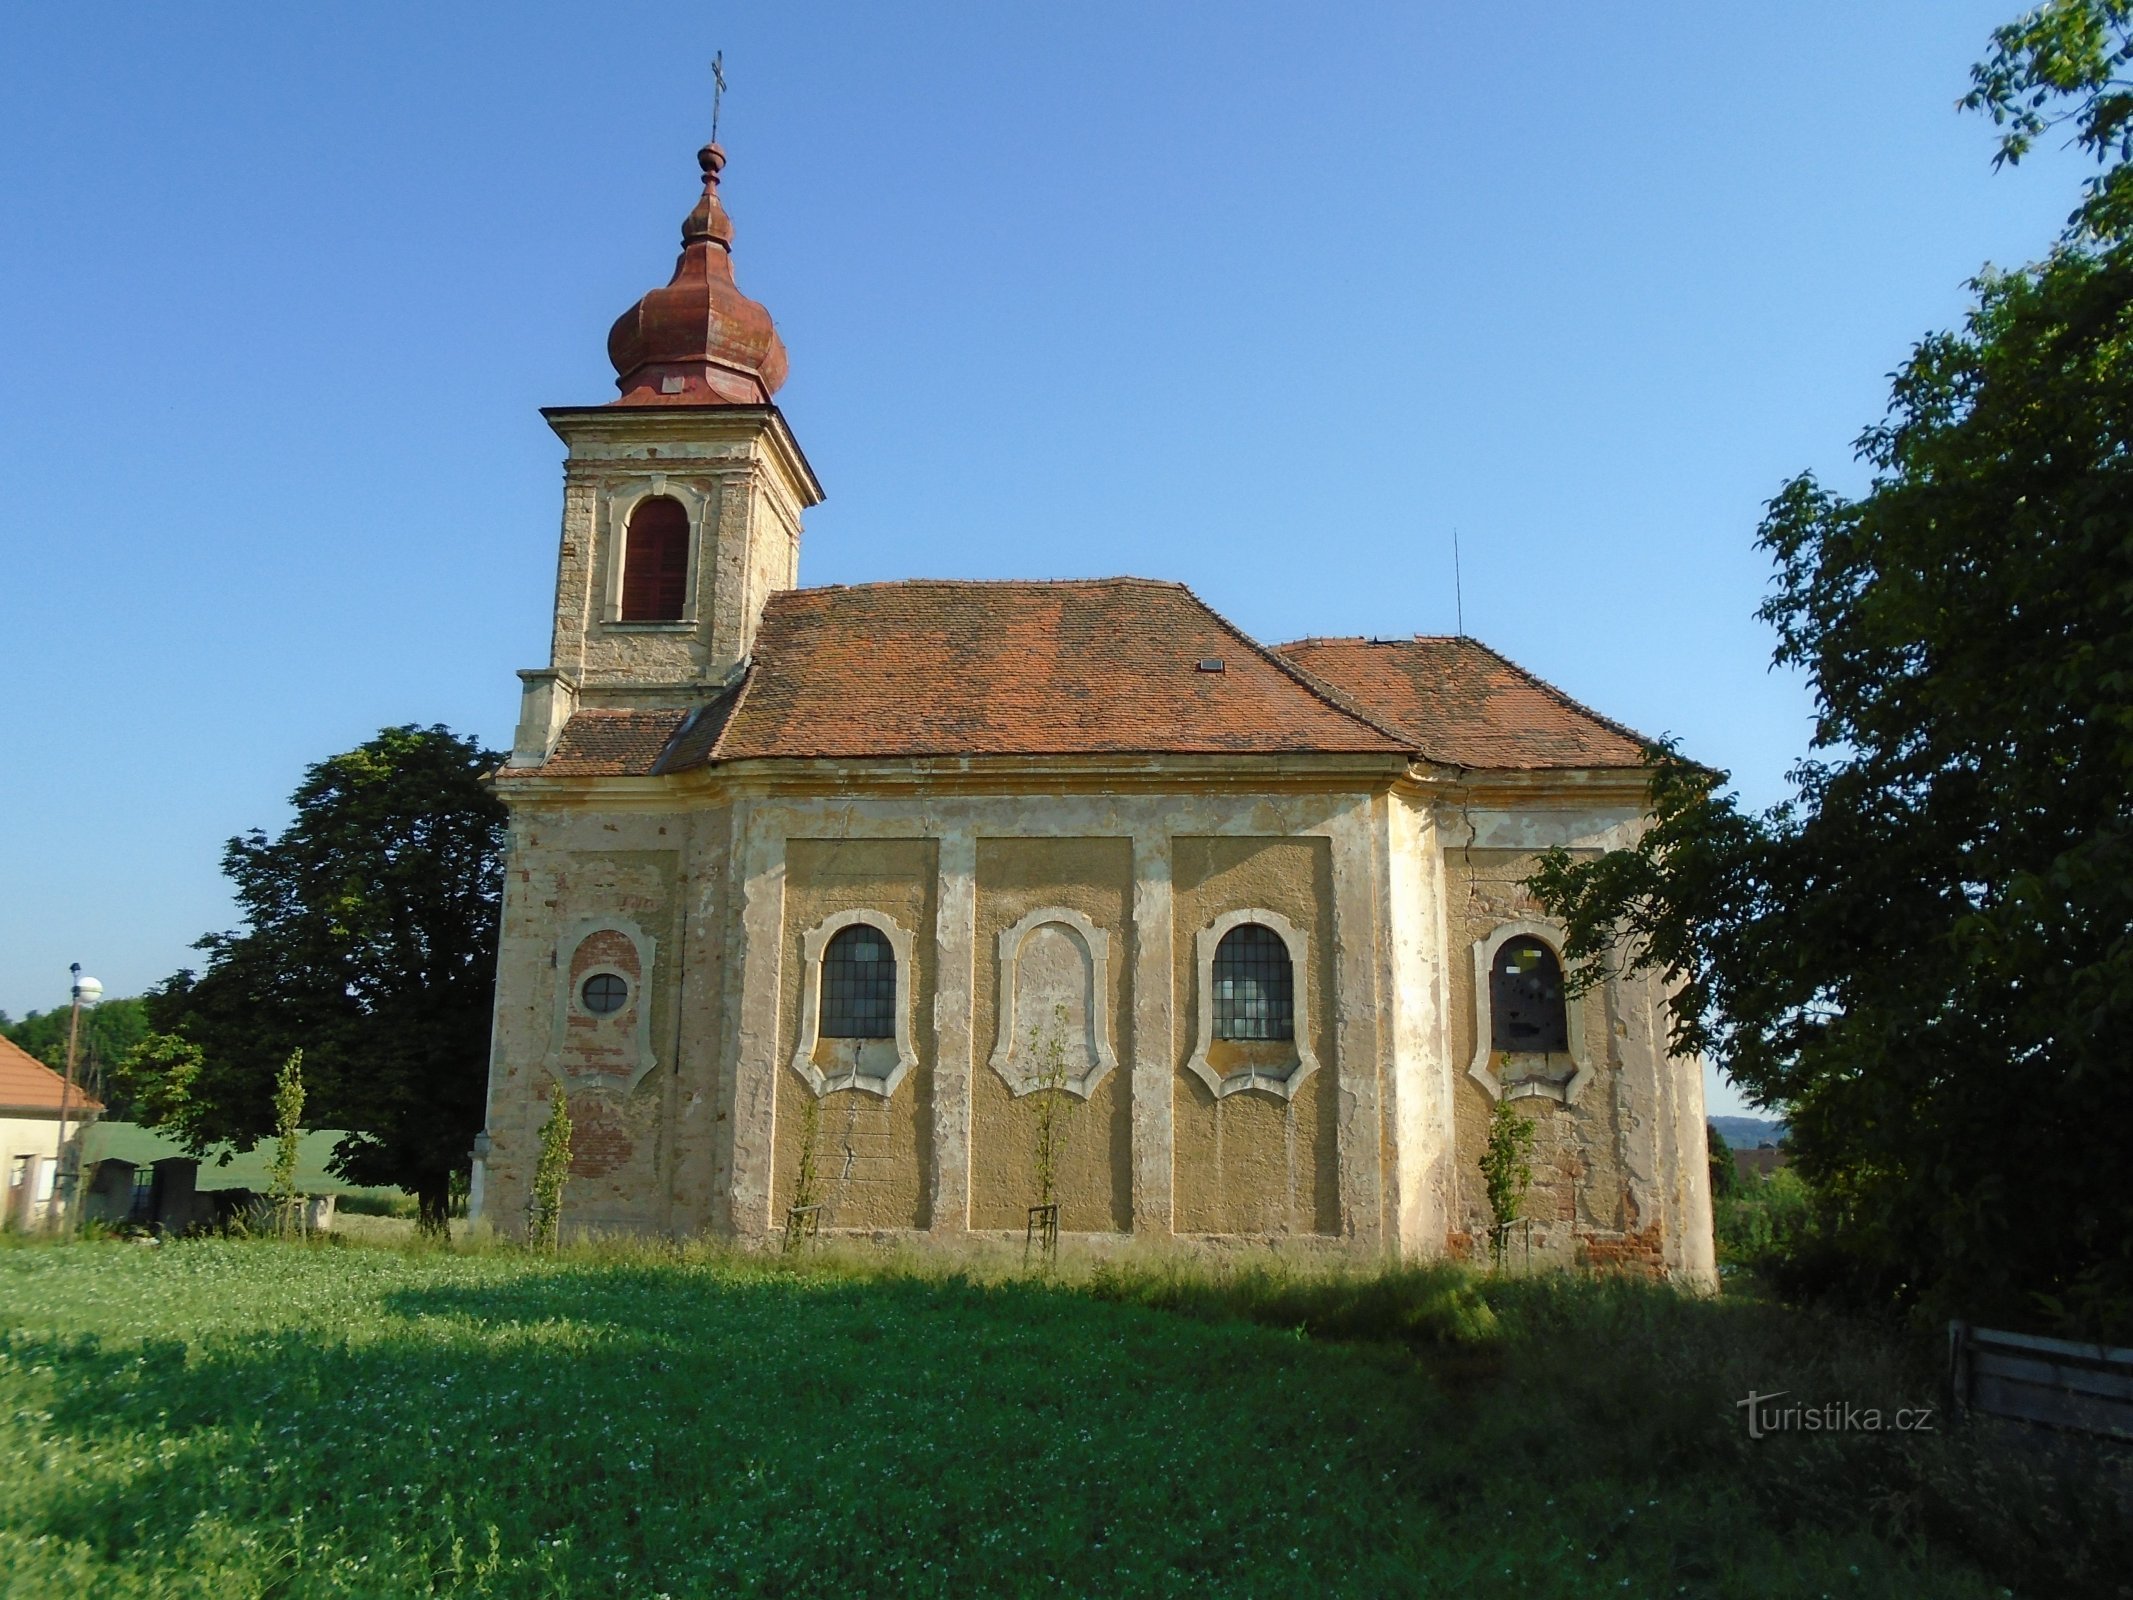 Церковь св. Николай, епископ (Žíželeves. 27.5.2018)